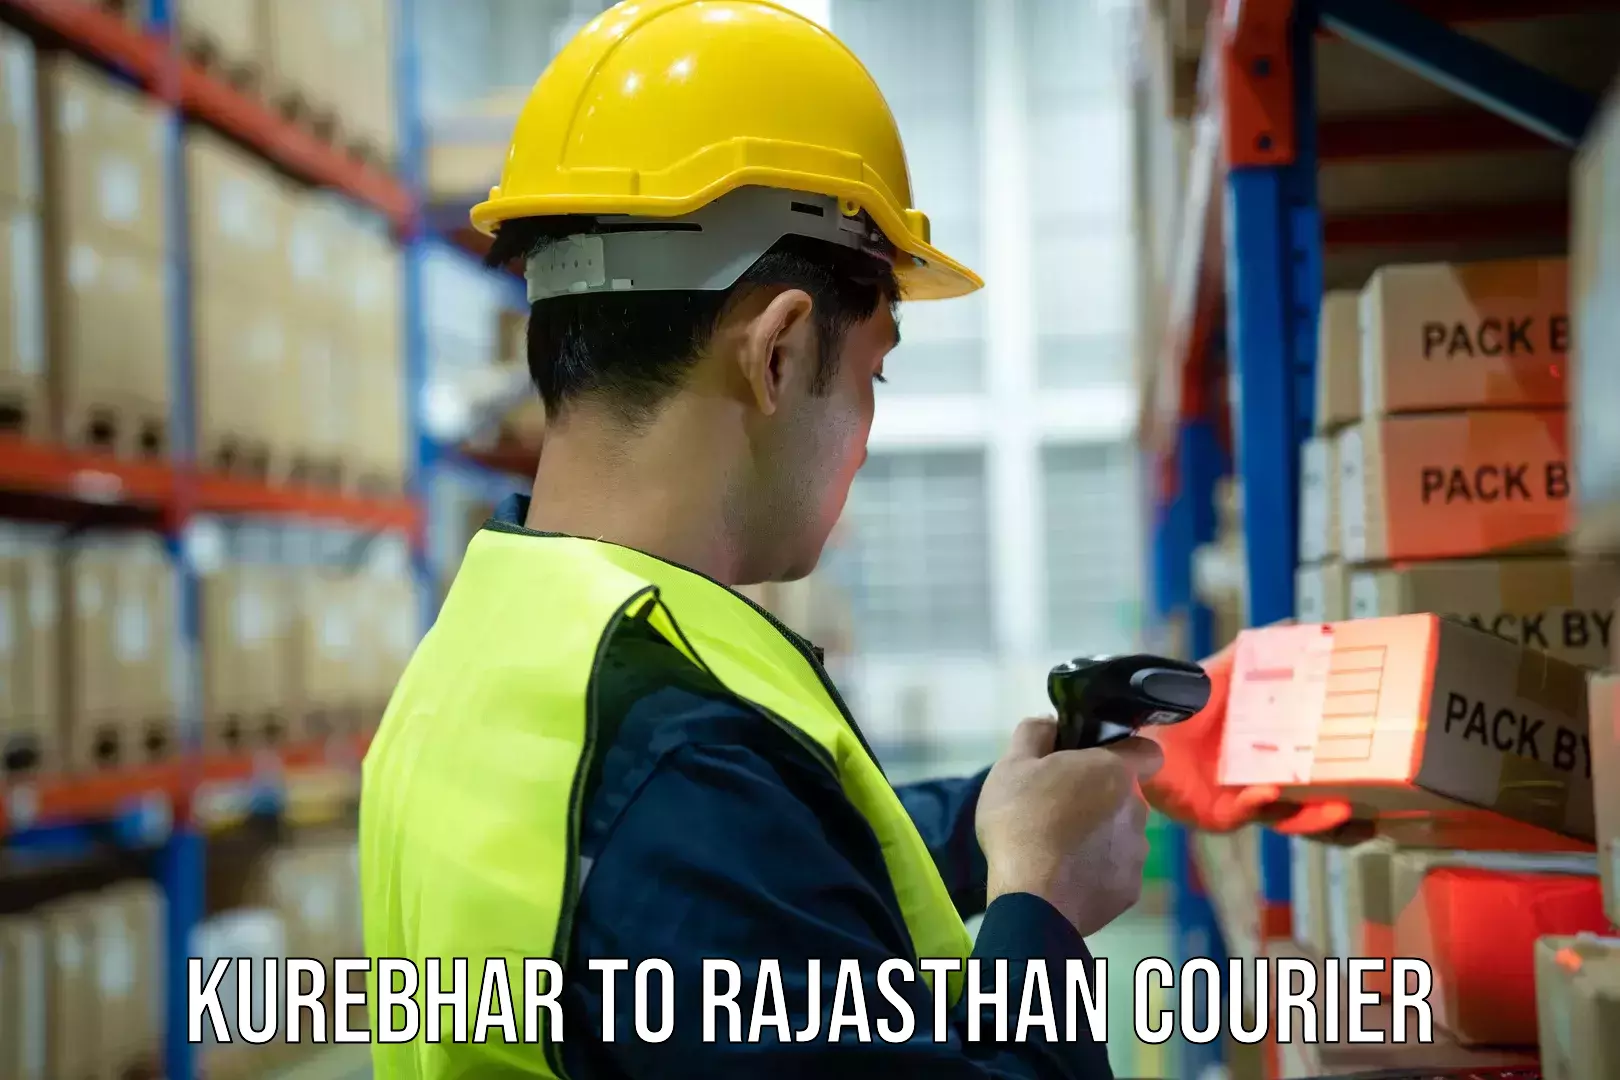 Rapid shipping services Kurebhar to Rajasthan